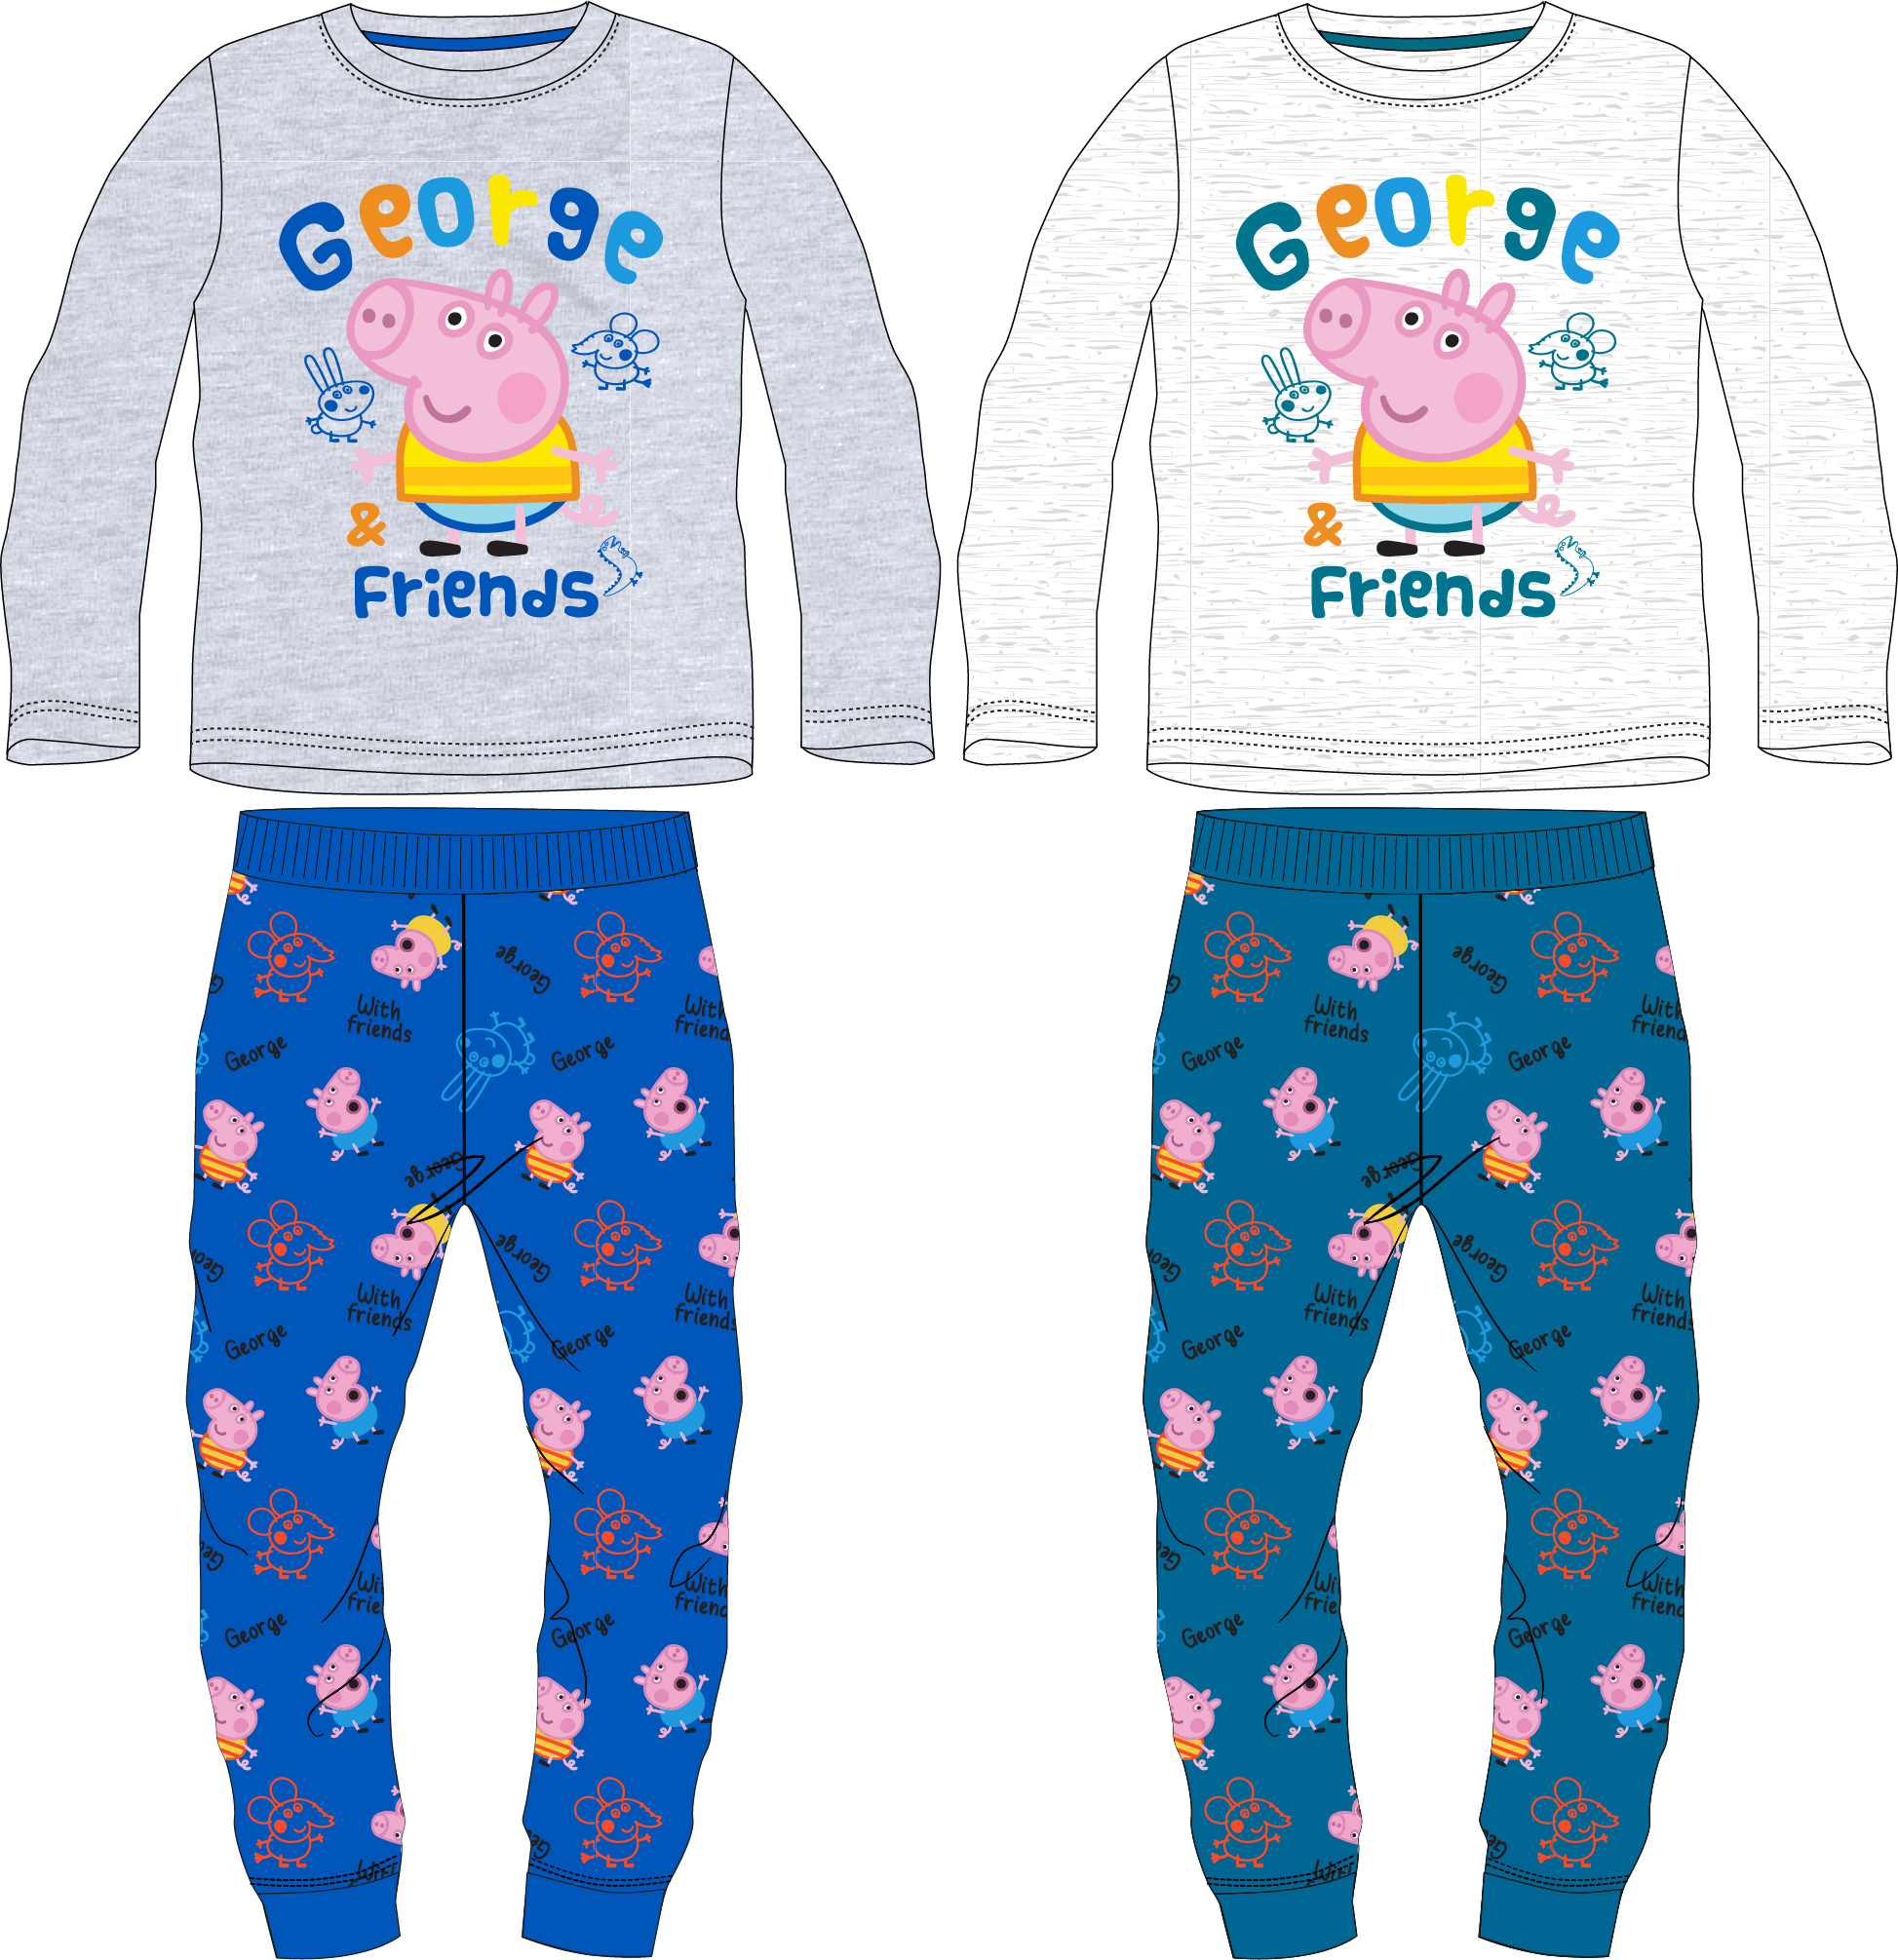 Prasátko Pepa - licence Chlapecké pyžamo - Prasátko Peppa 5204906, šedý melír / modrá Barva: Modrá, Velikost: 104